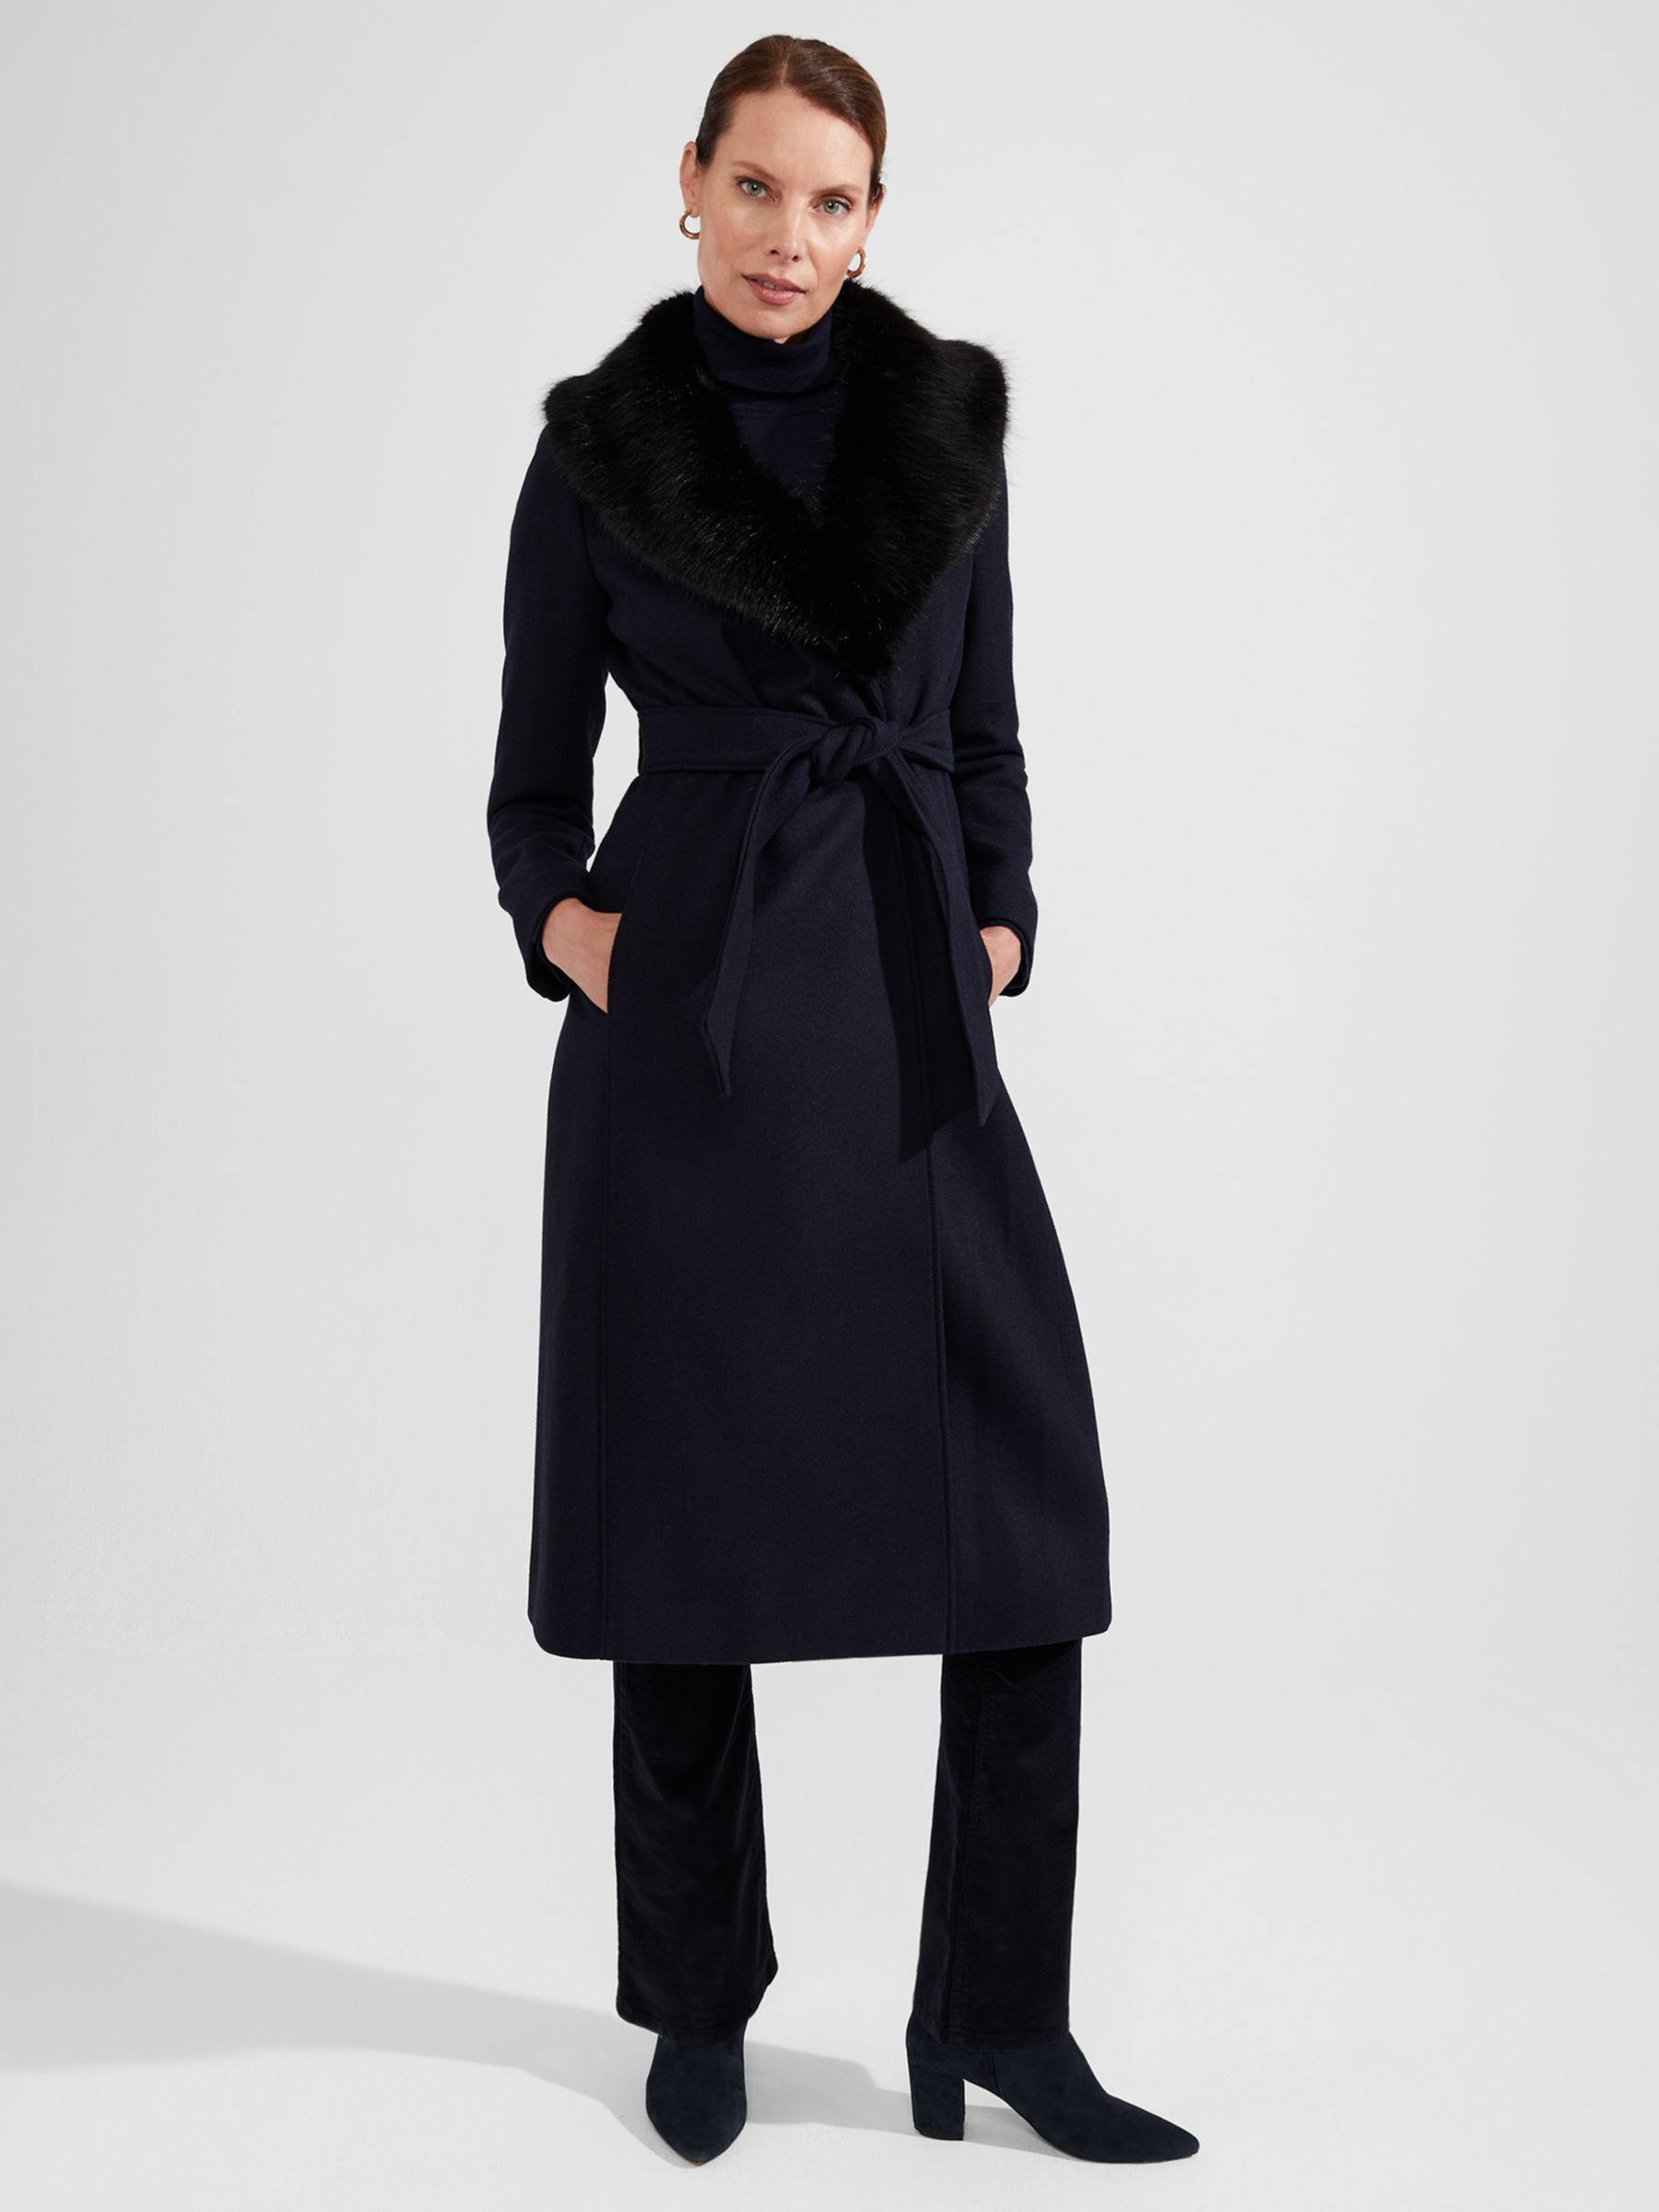 Hobbs Arielle Wool Blend Coat, Navy at John Lewis & Partners